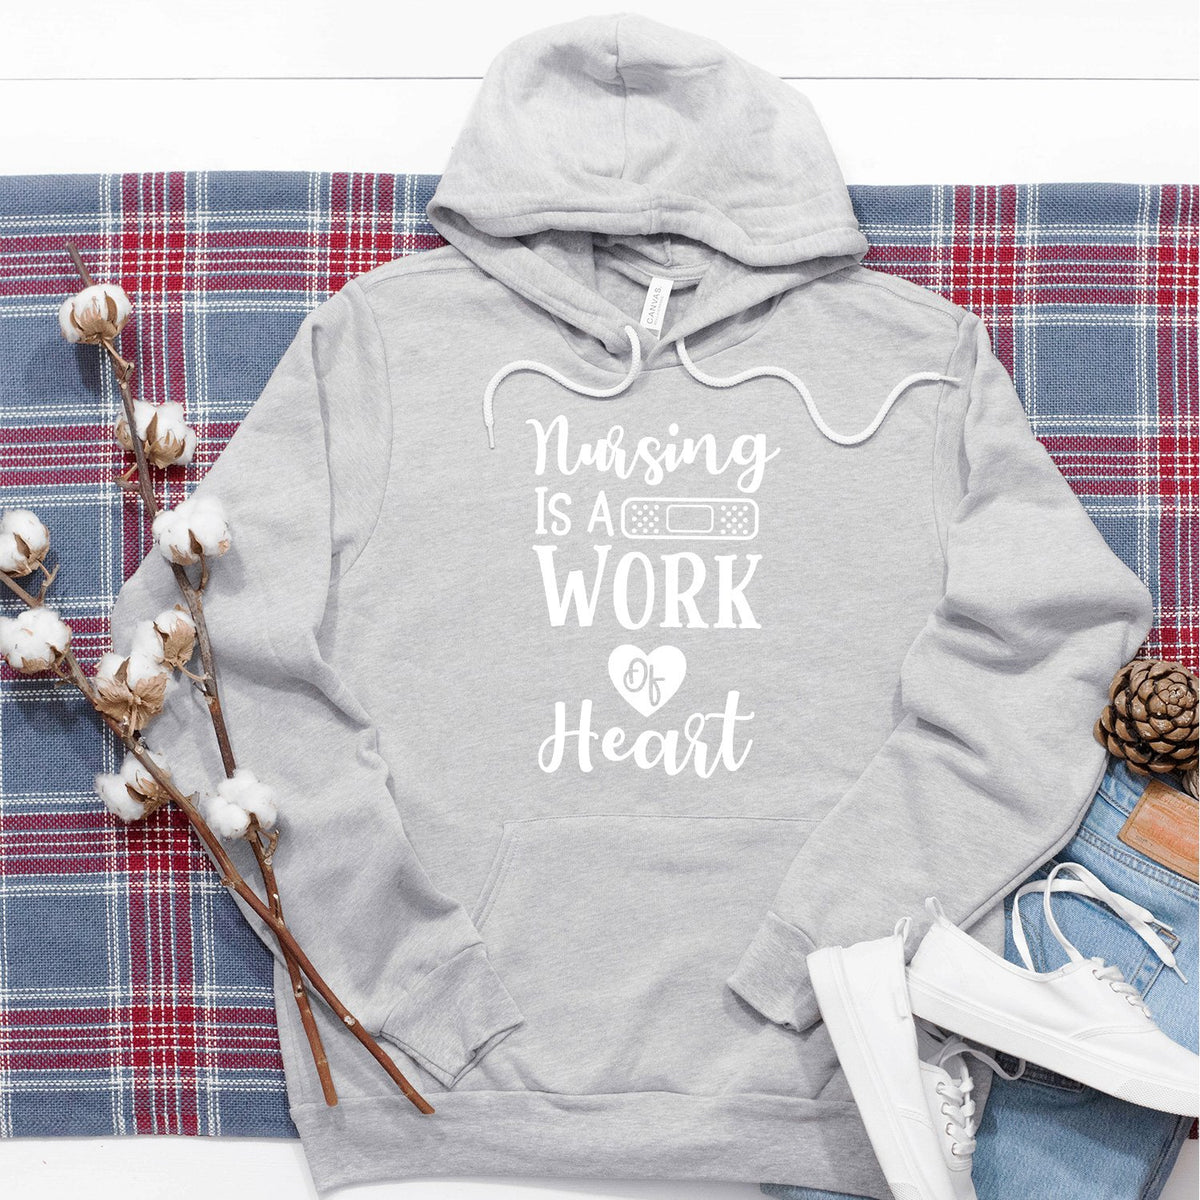 Nursing is A Work of Heart - Hoodie Sweatshirt